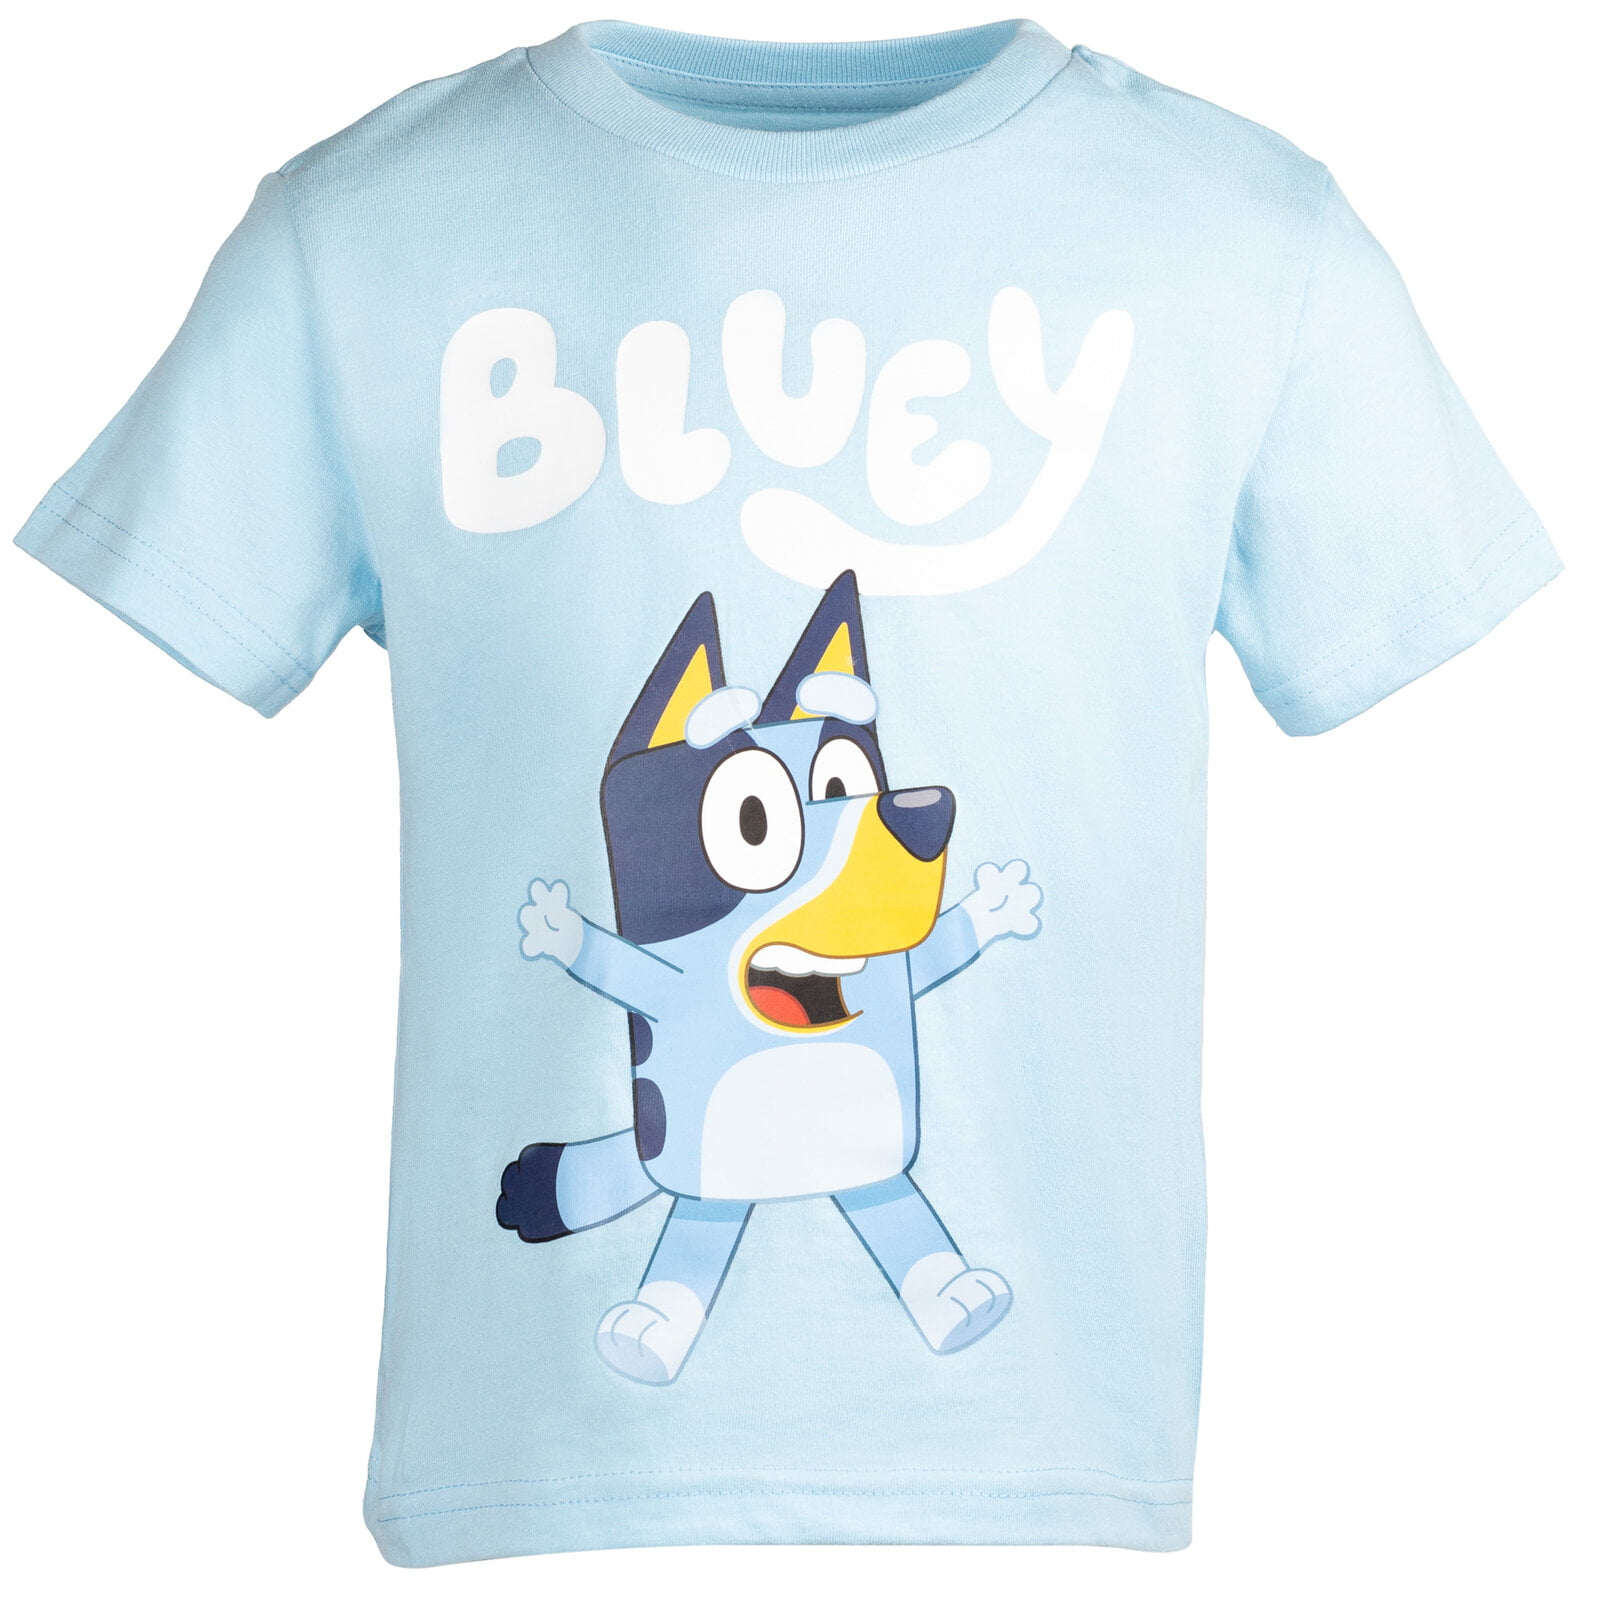 Bluey Bingo Toddler Boys 3 Pack Camisetas, Varios Chile